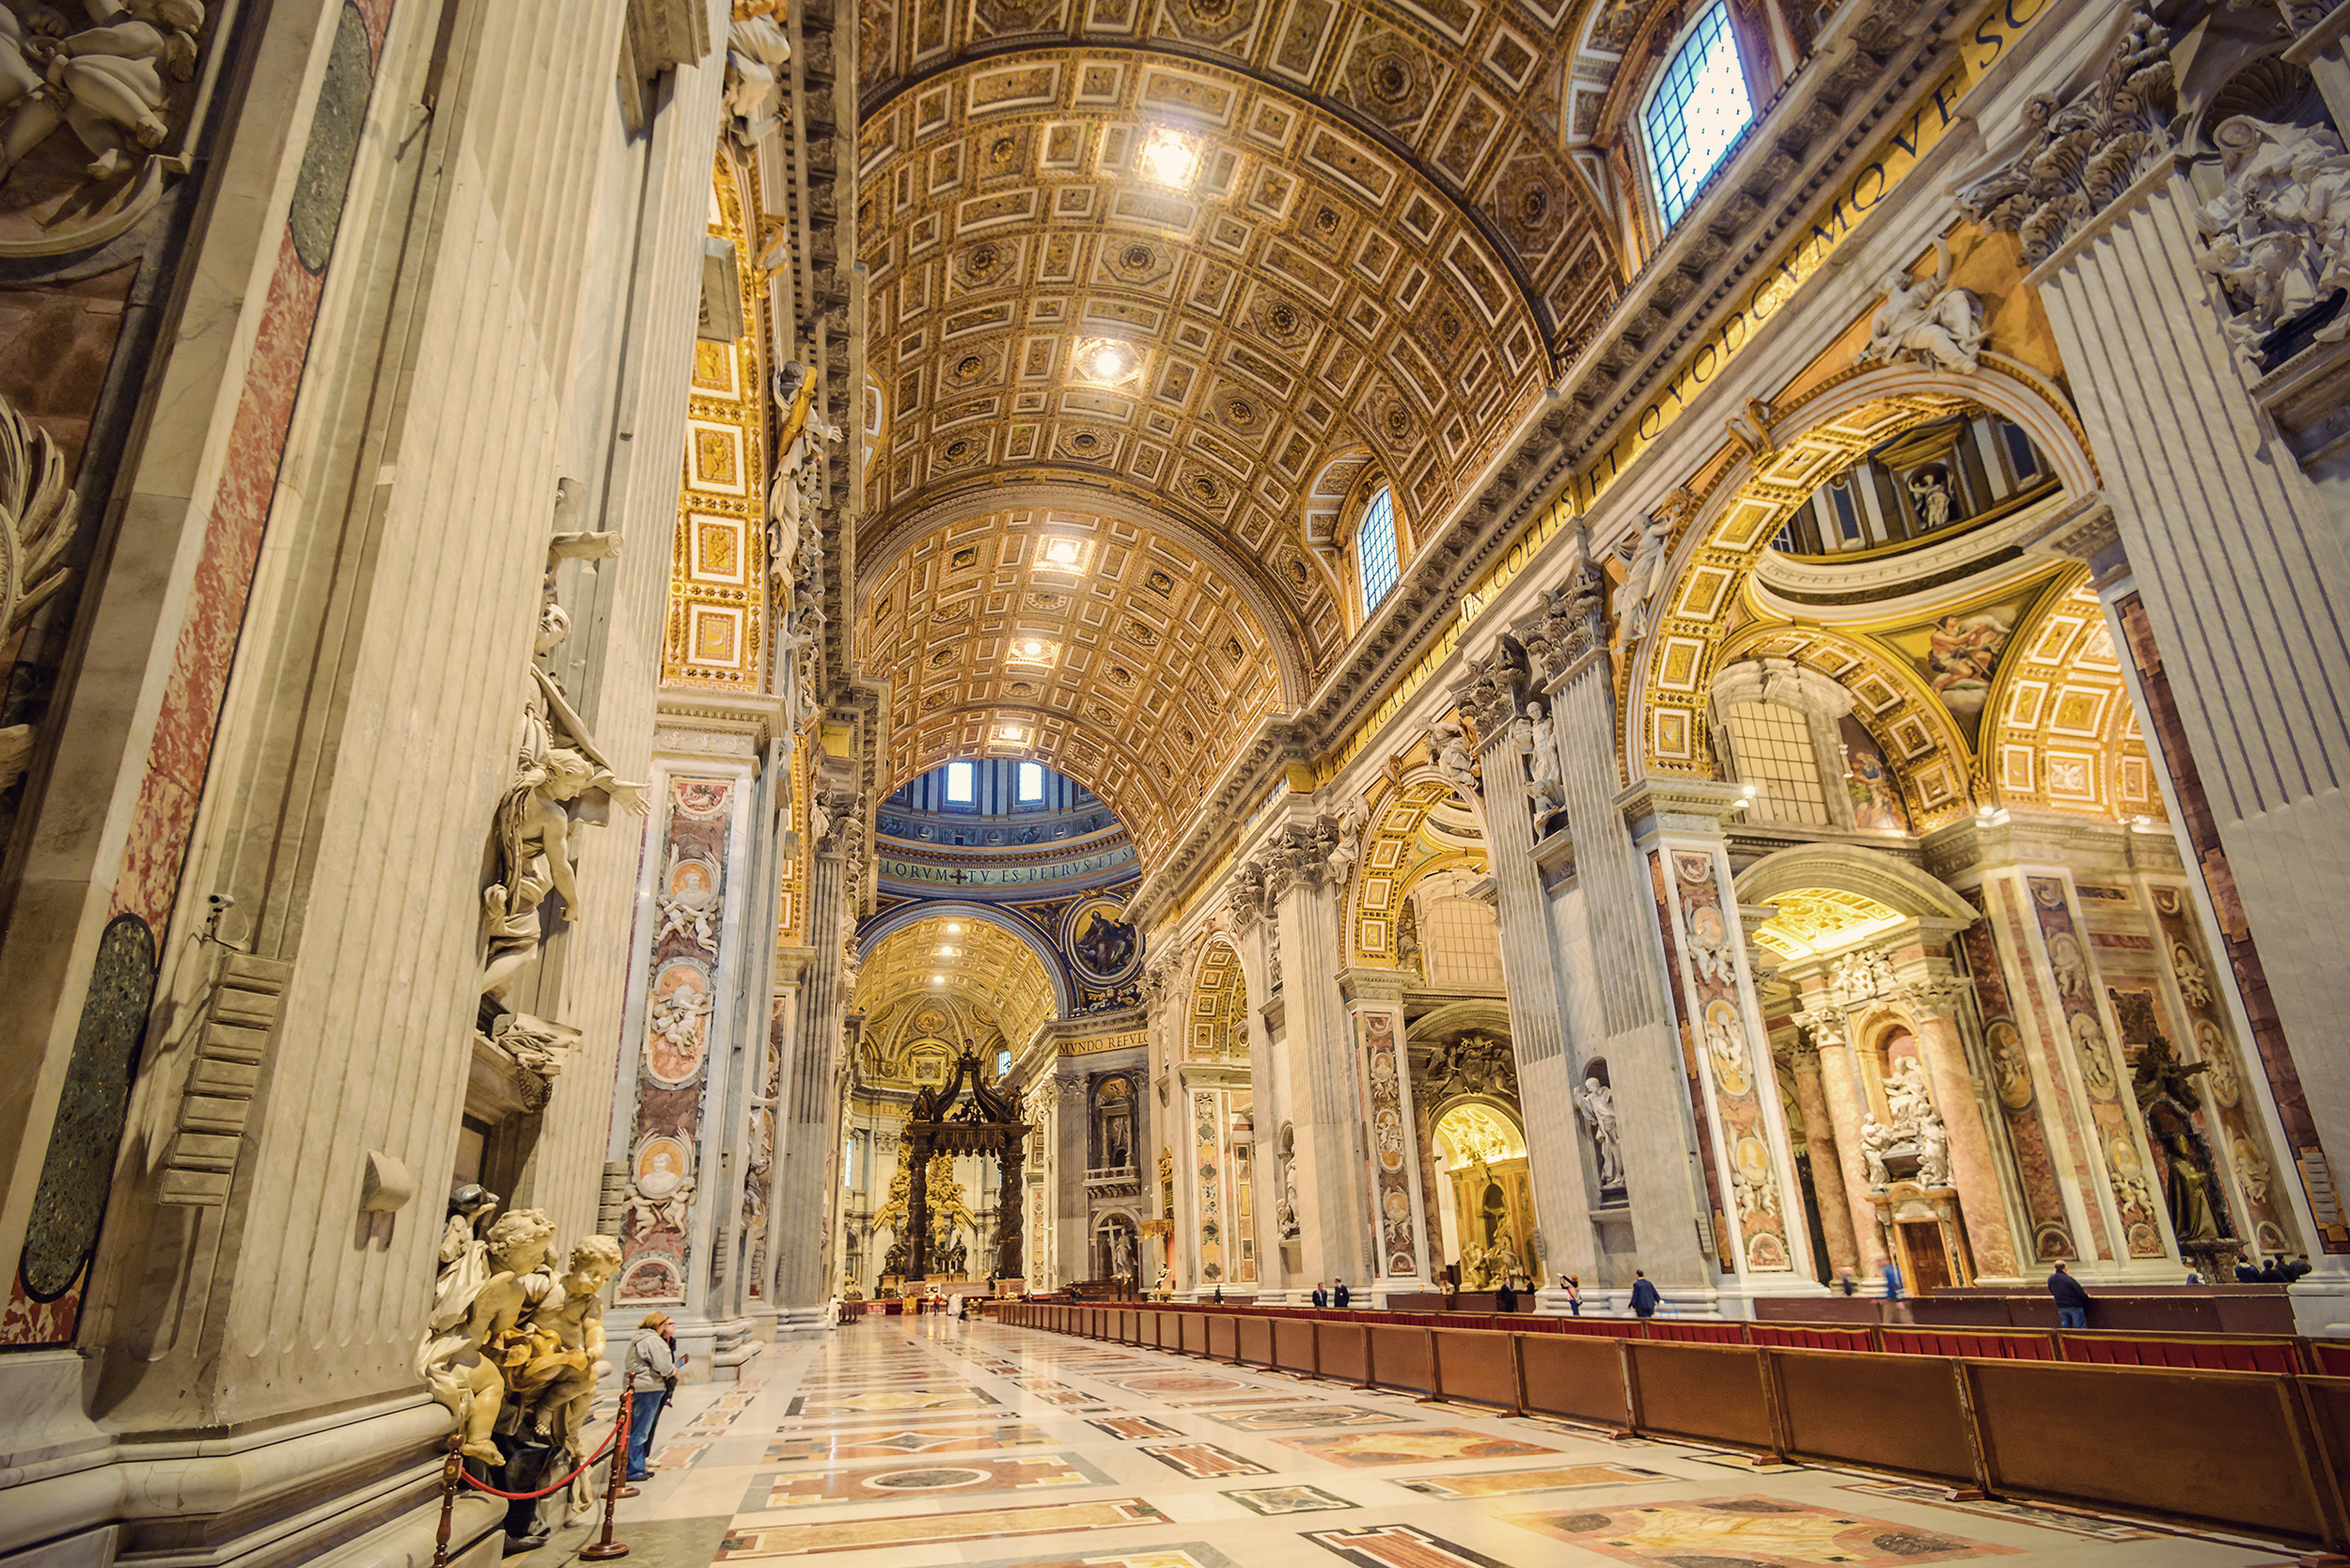 Visita guidata alla Basilica di San Pietro e ingresso alla Cupola